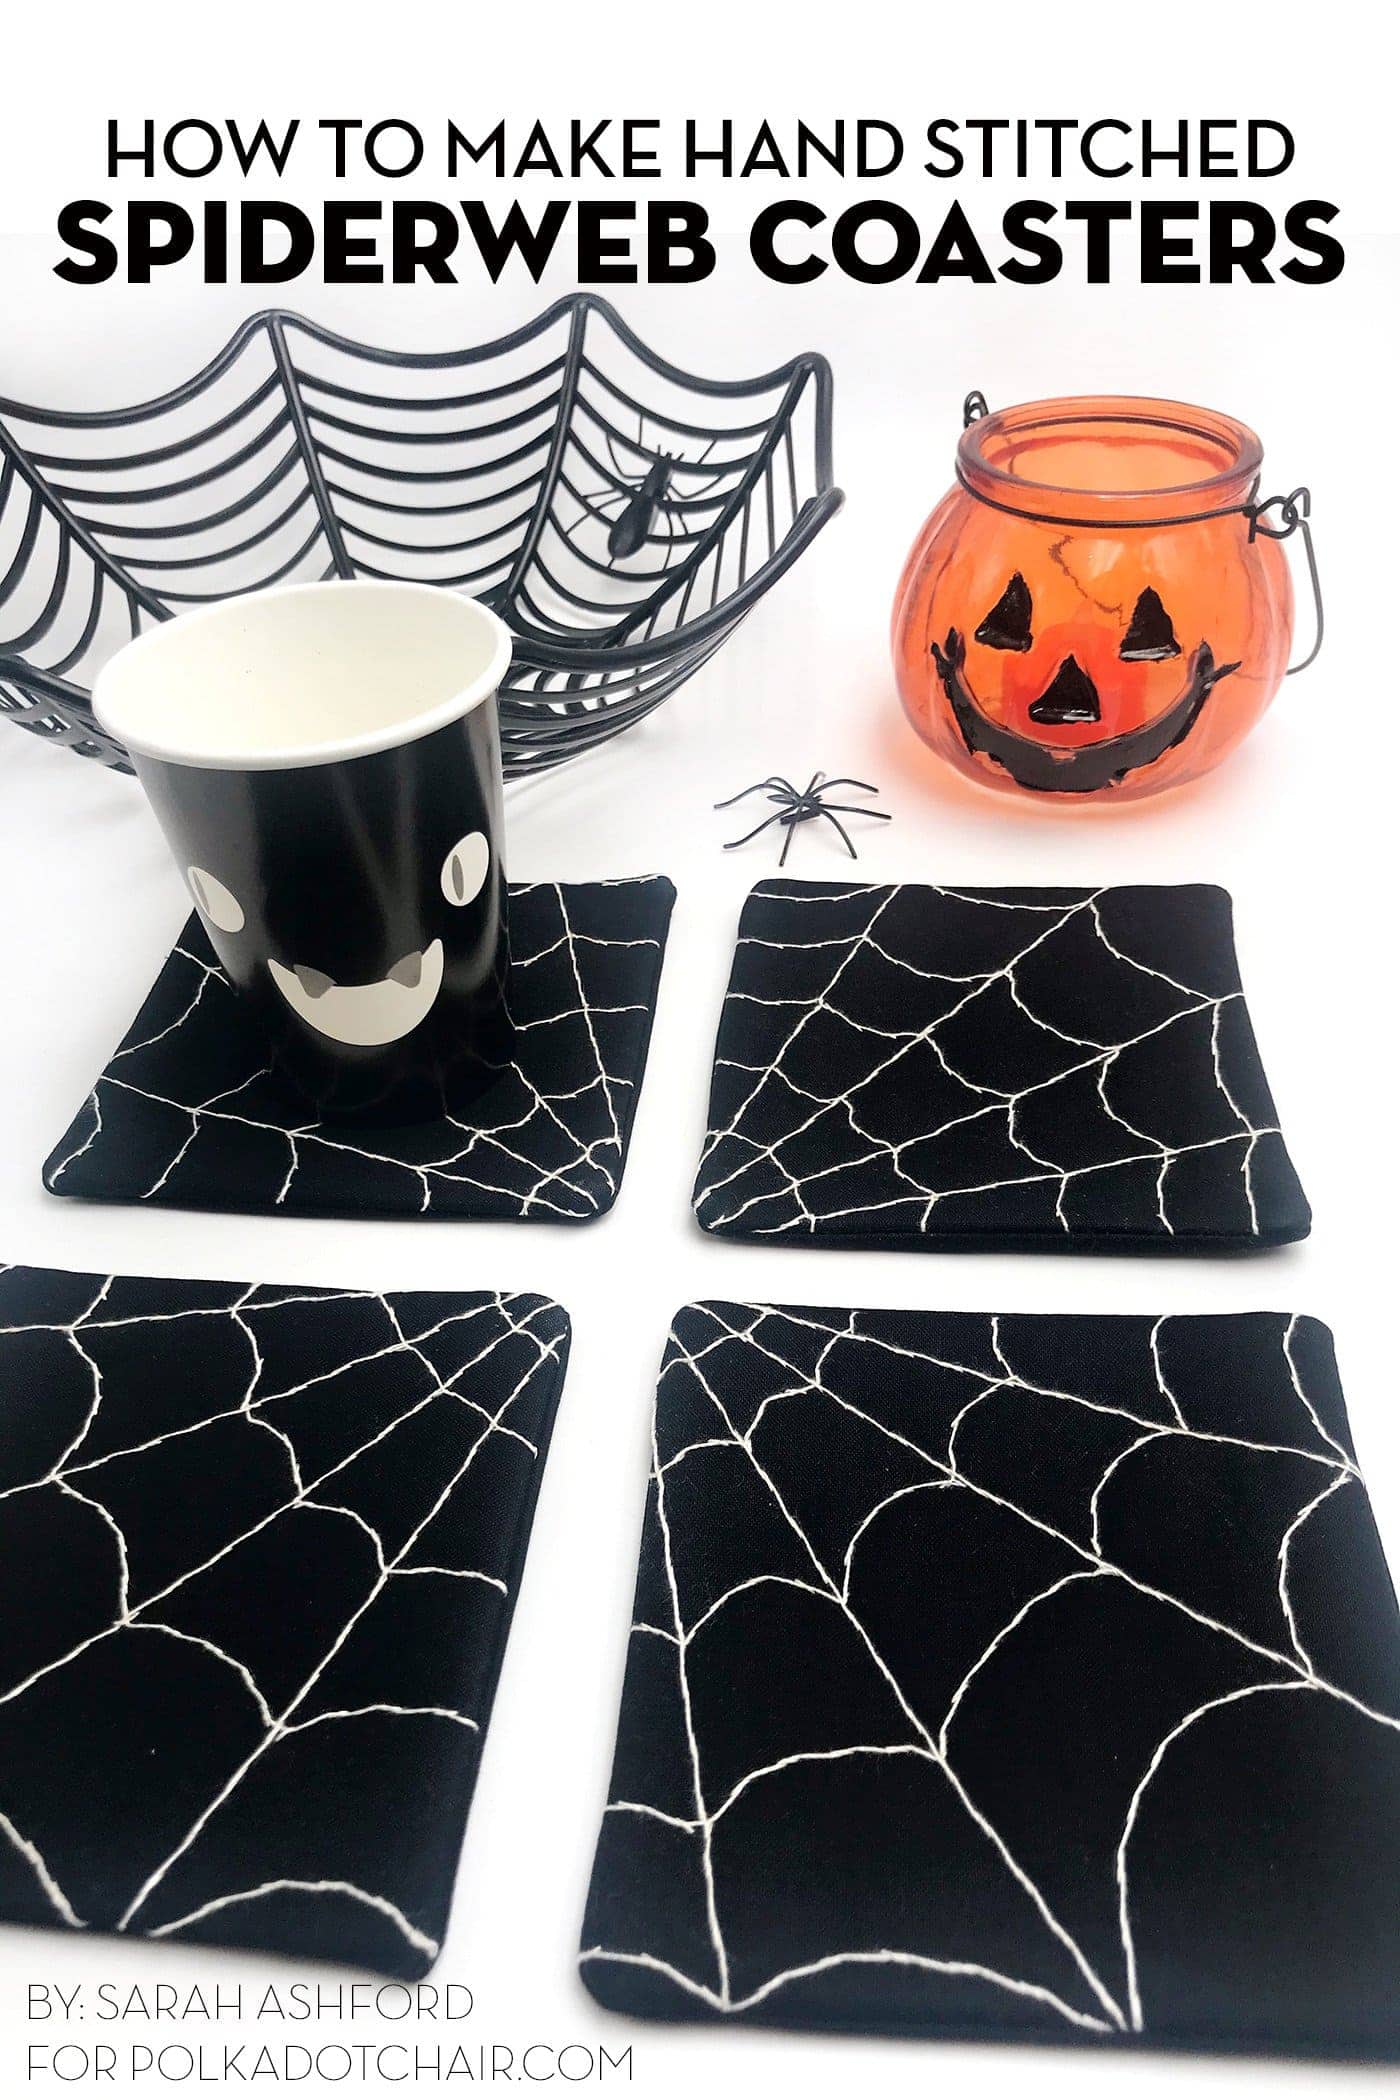 4 dessous de verre en toile d'araignée noir et blanc sur table blanche avec accessoires d'Halloween